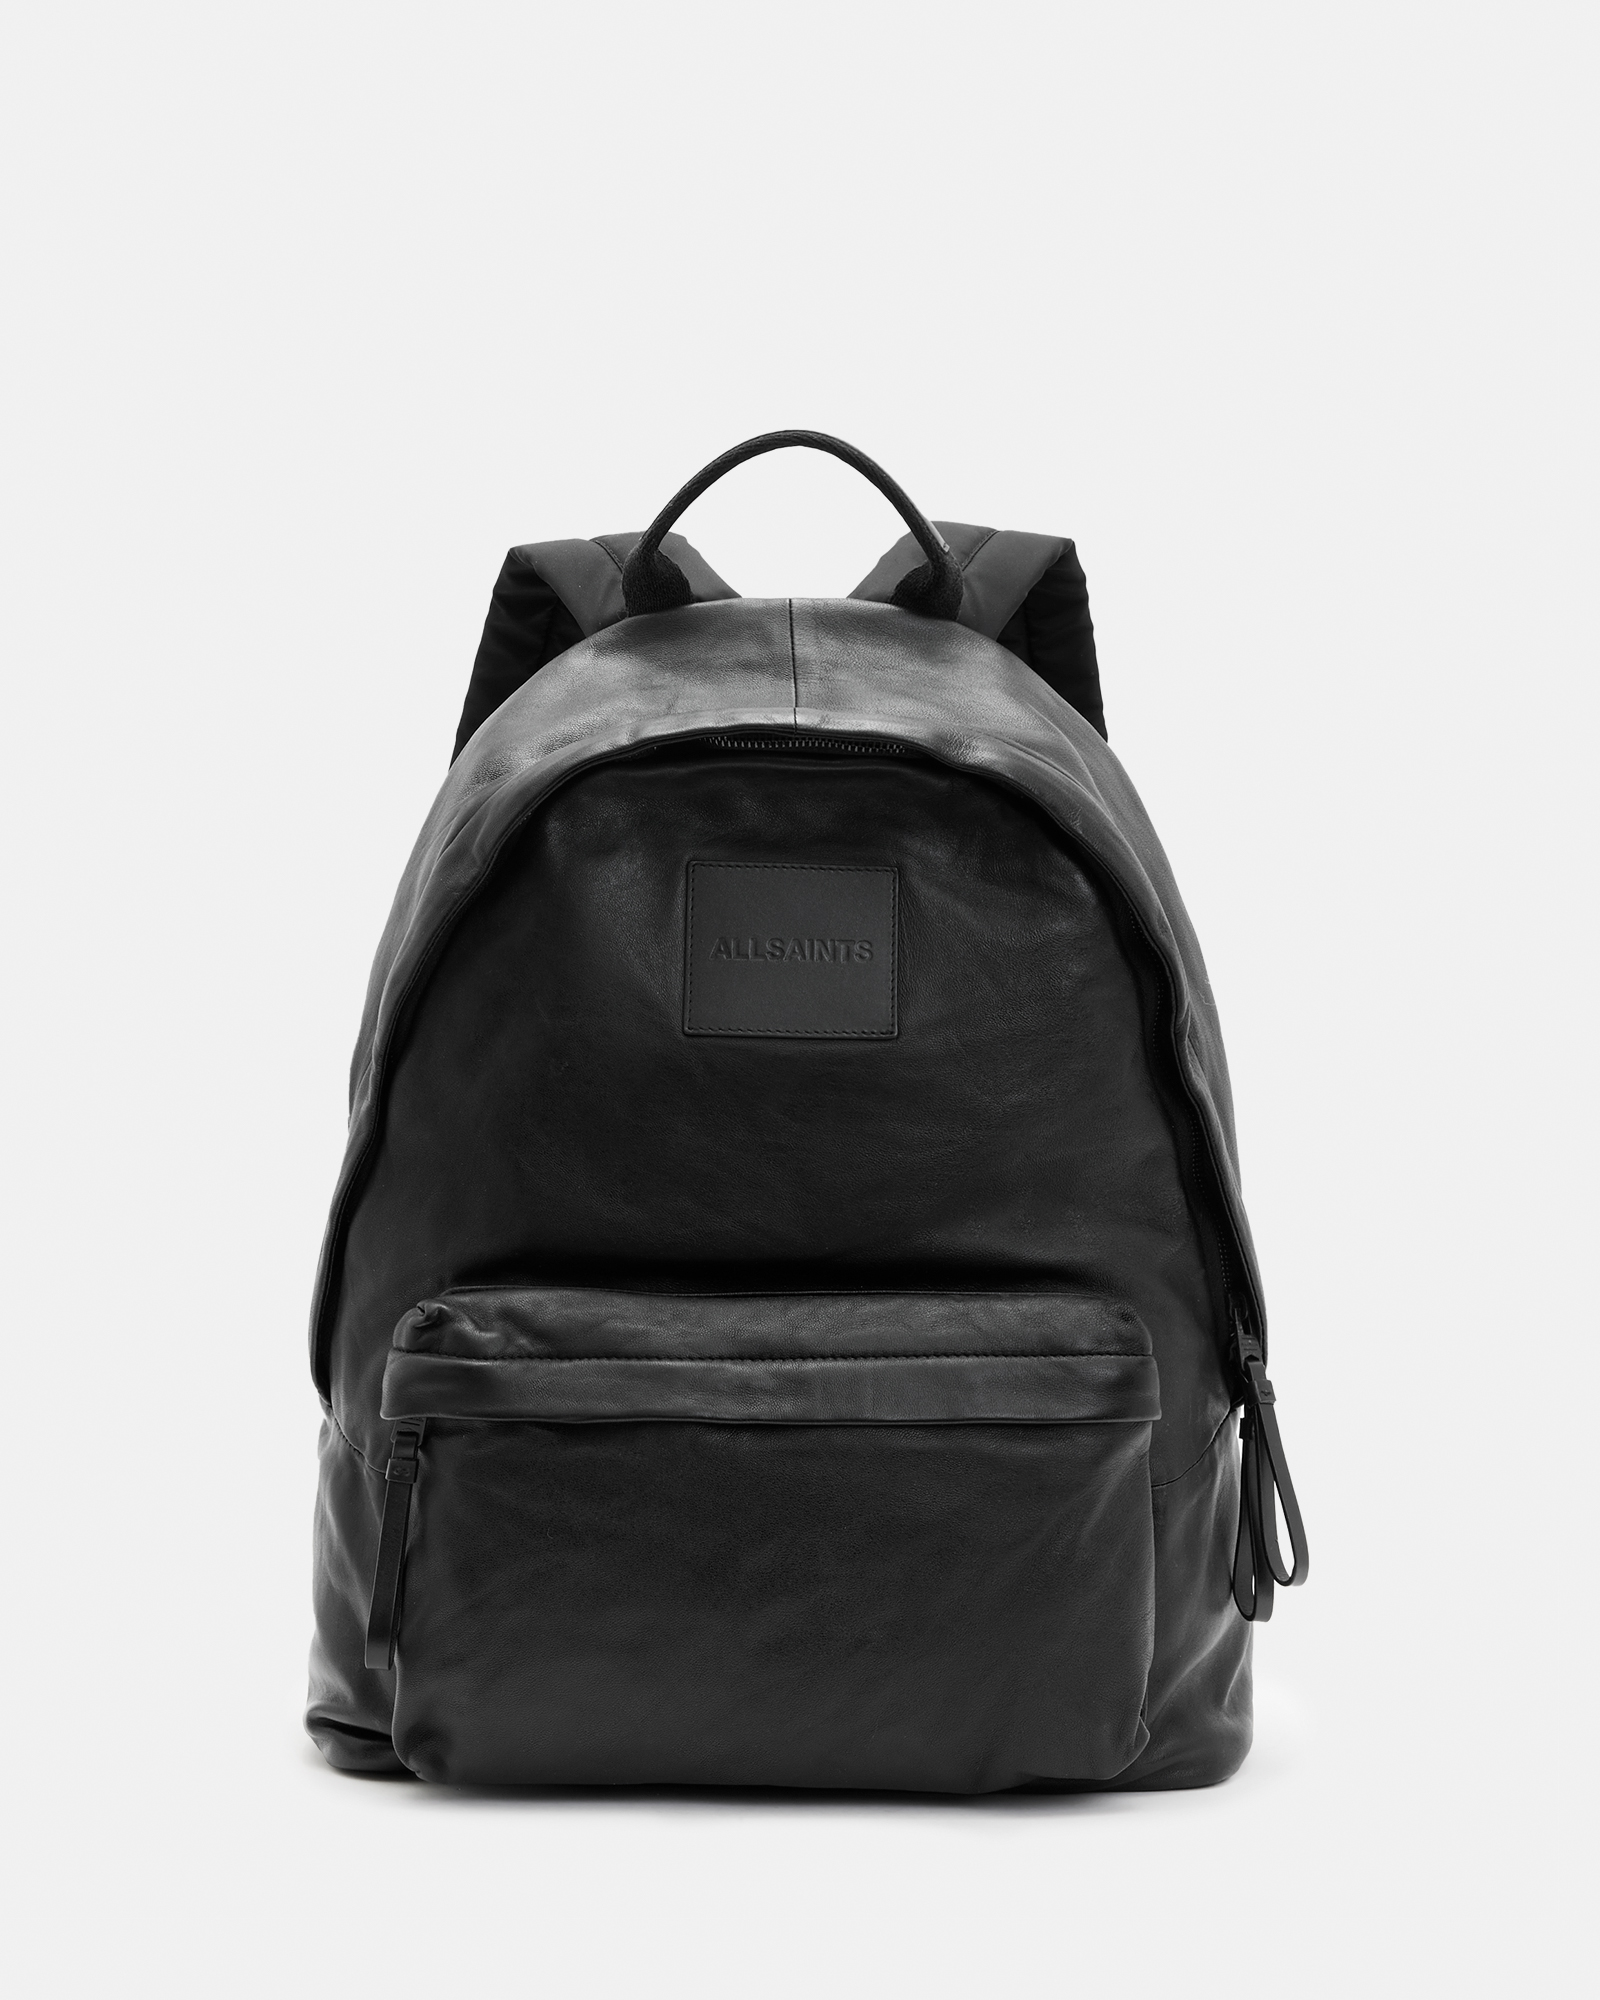 AllSaints Carabiner Leather Backpack,, Black